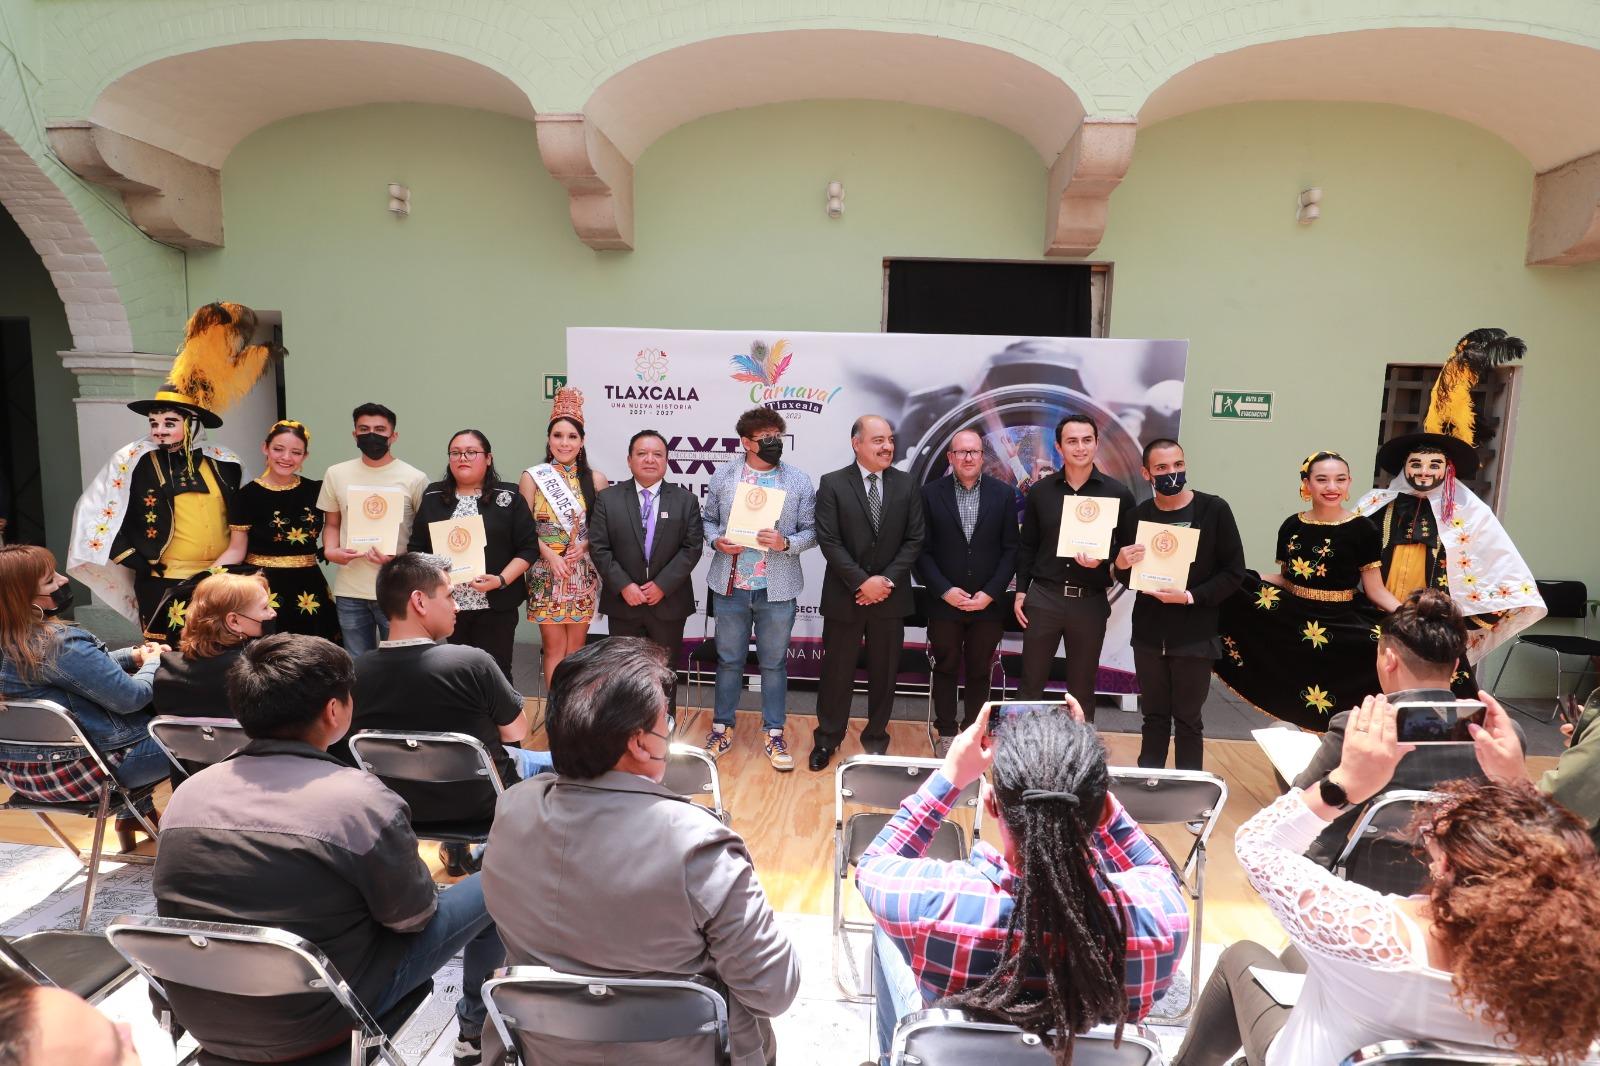 Premian a ganadores del XXIII certamen fotográfico “El carnaval de tlaxcala en imágenes”